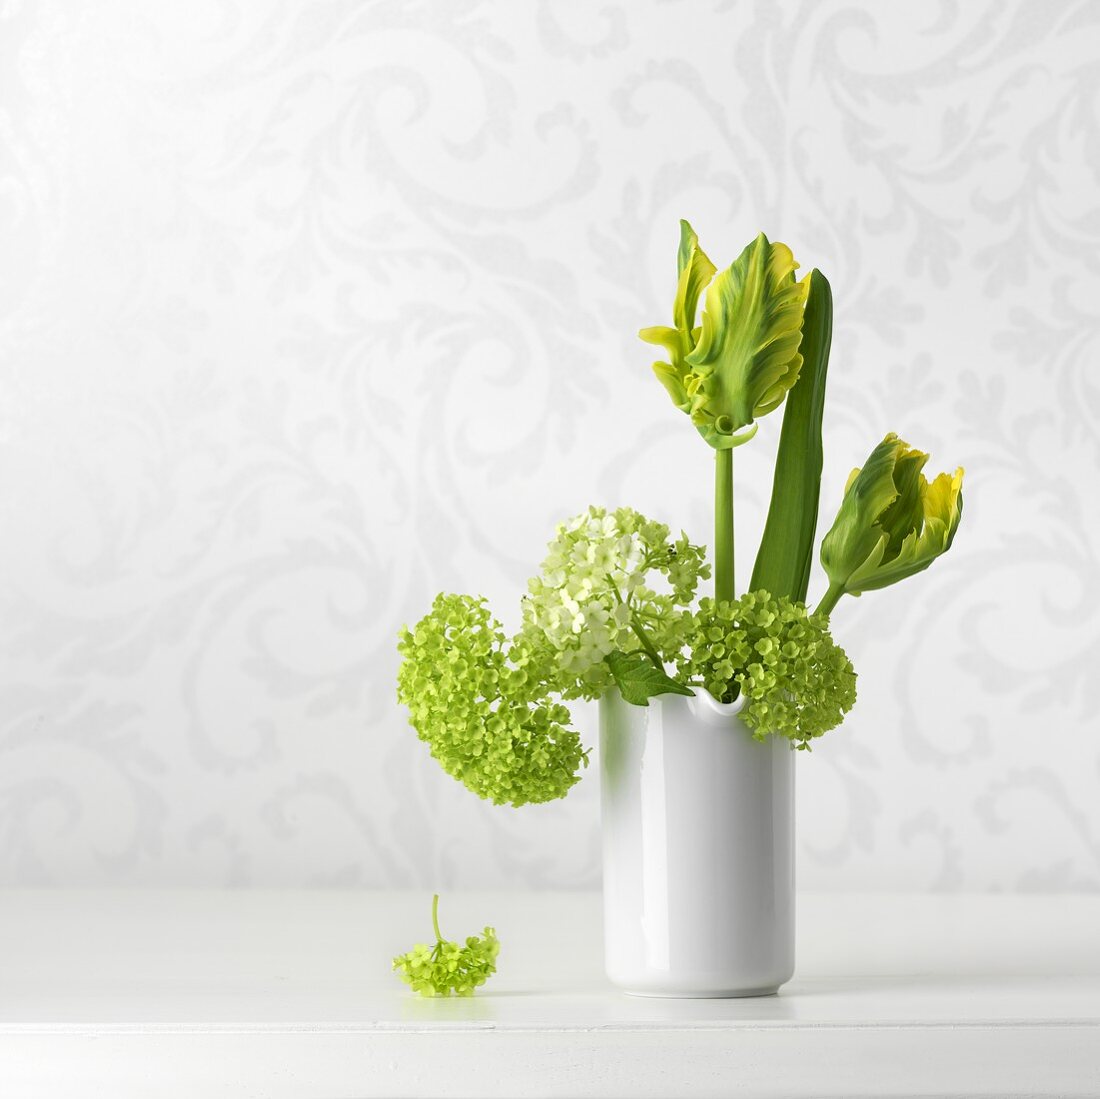 Gelb-grüne Tulpen und Hortensien in Vase